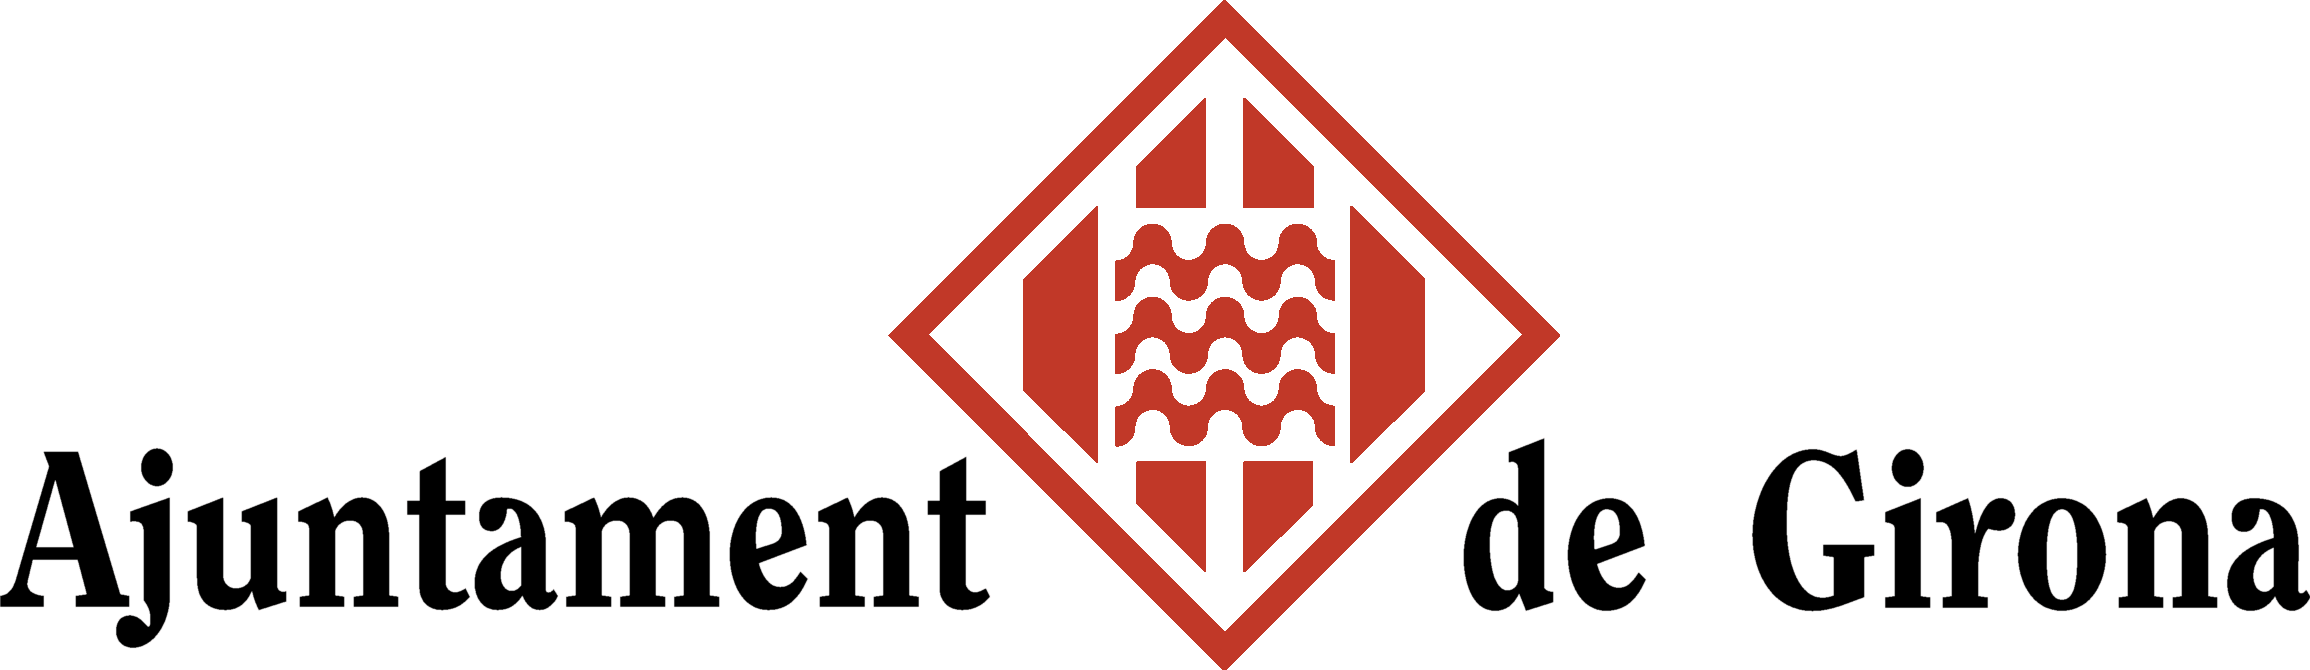 Logotip de l'Ajuntament de Girona | Oficina de Comunicació - Ajuntament de Girona